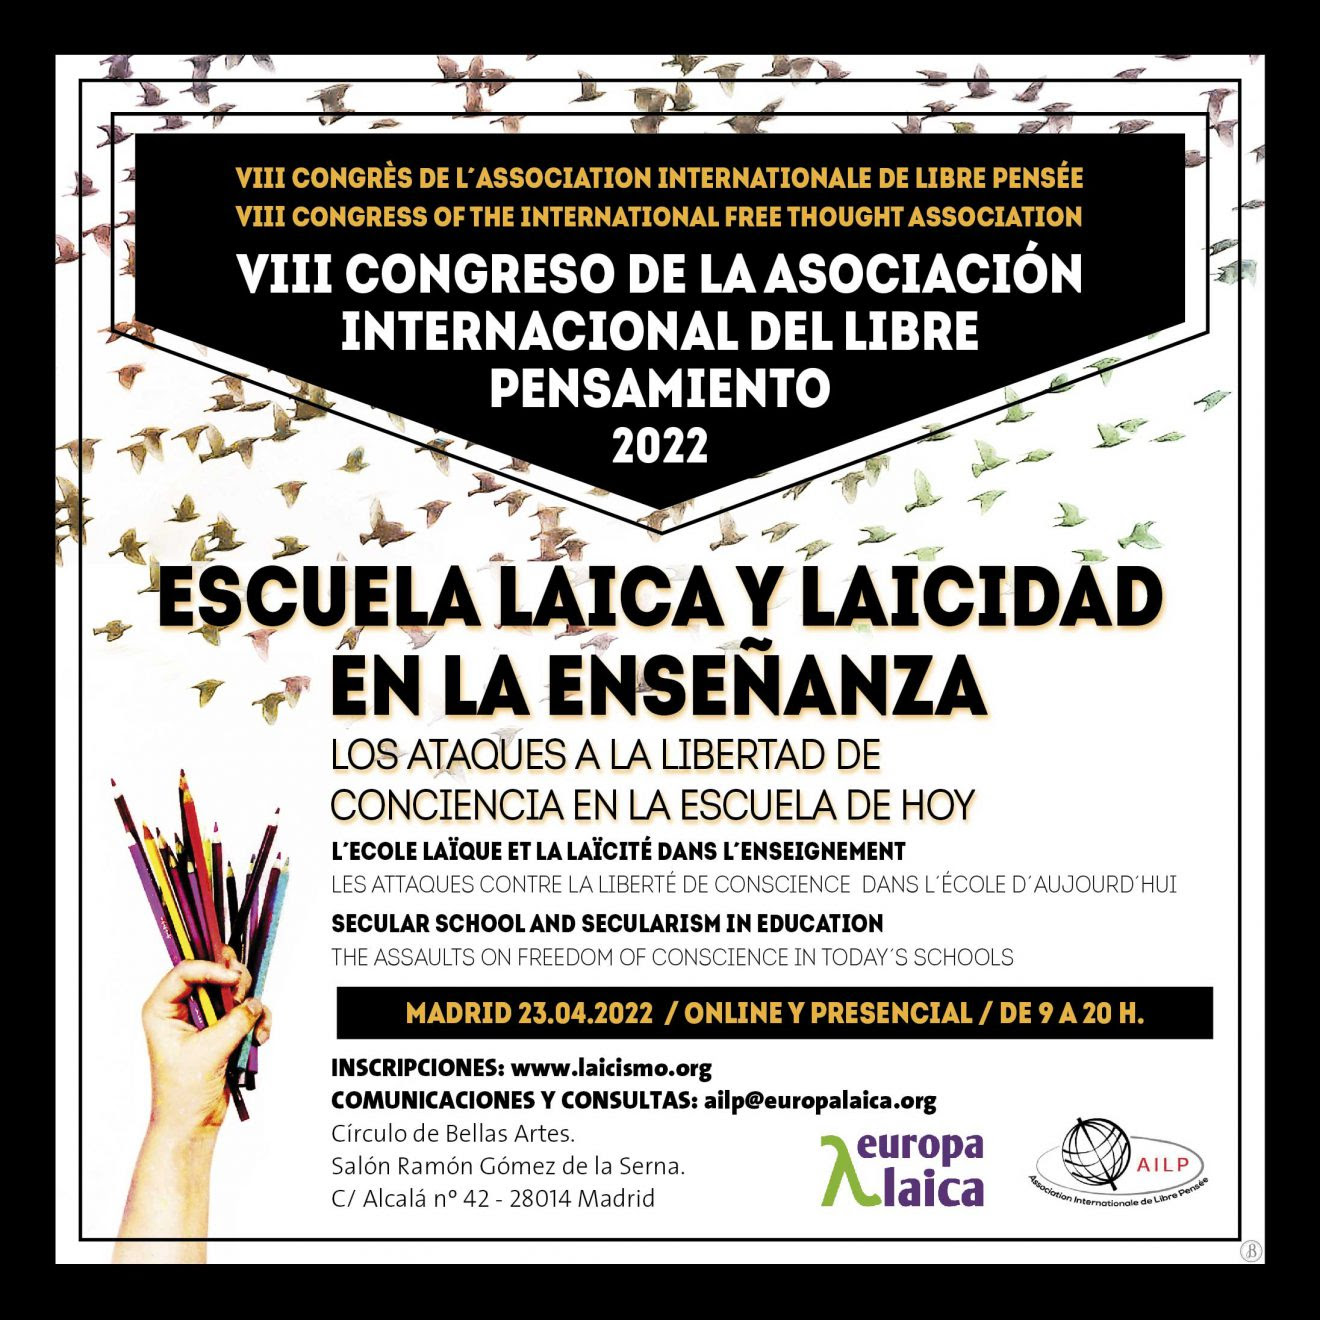 El VII Congreso Internacional de la AILP tendrá lugar el 23 de abril de 2022 en Madrid y tratará sobre laicidad en la enseñanza